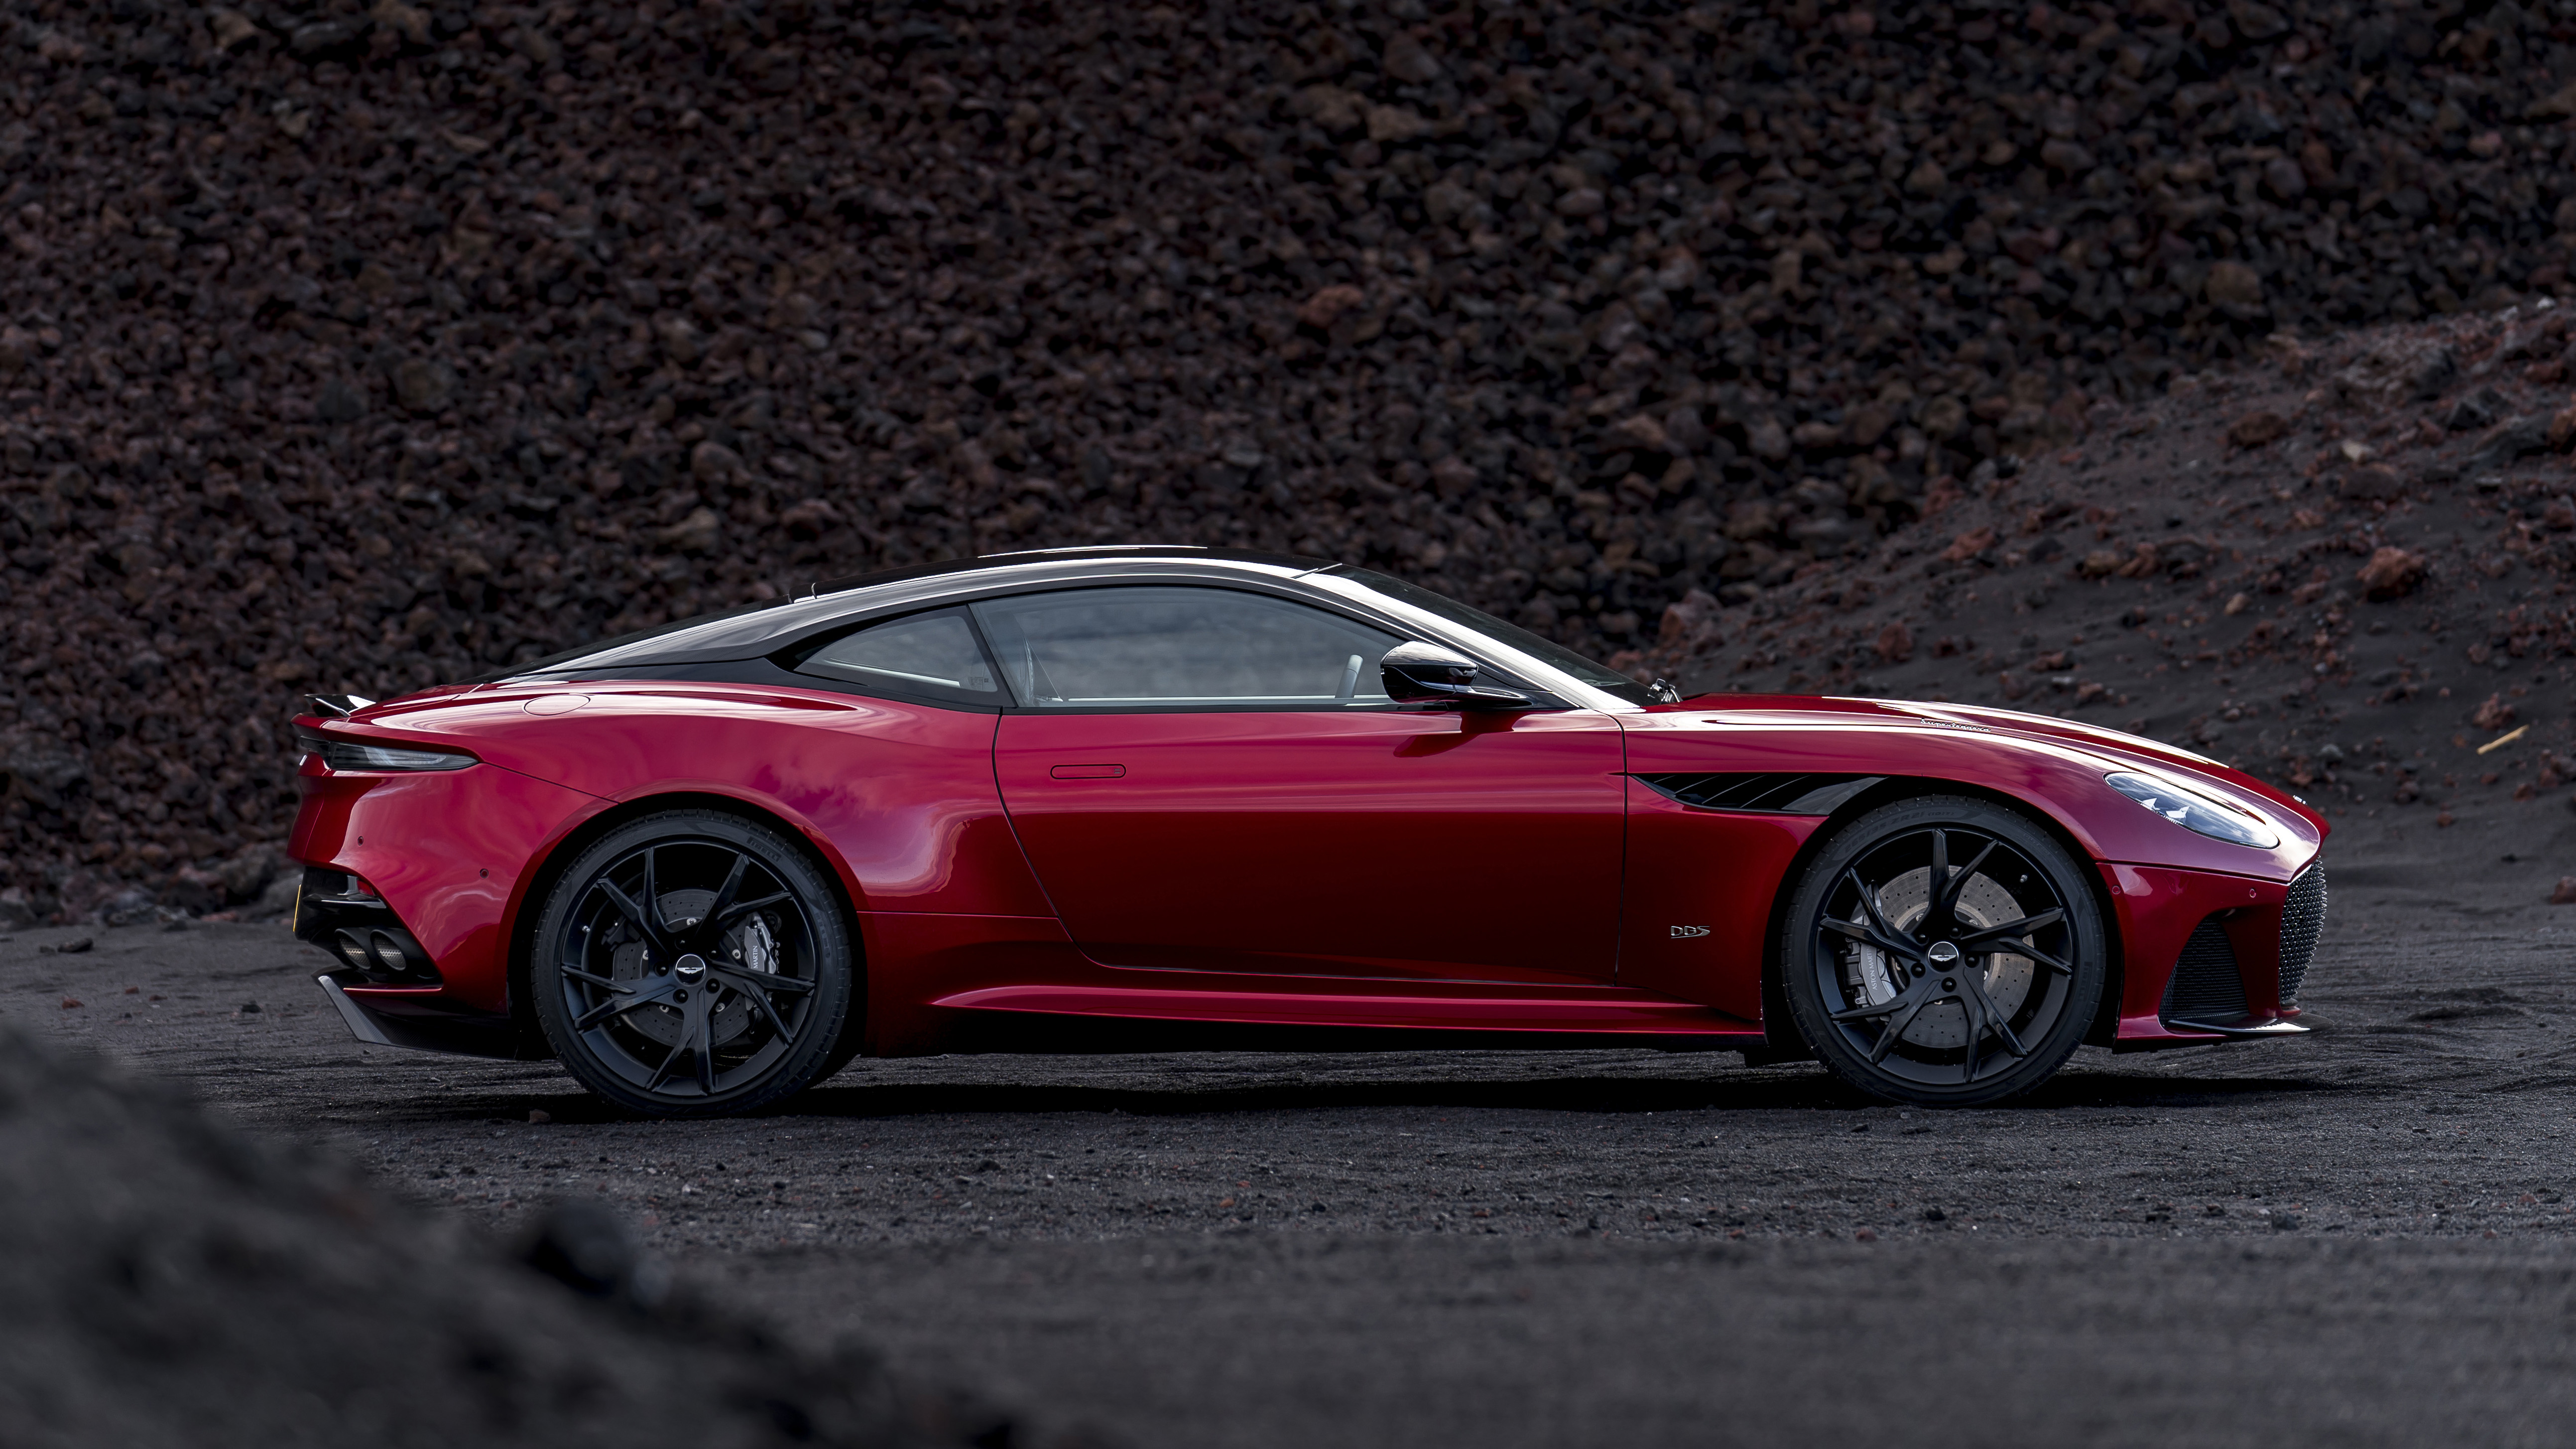 Aston Martin DBS Superleggera 4k specifications